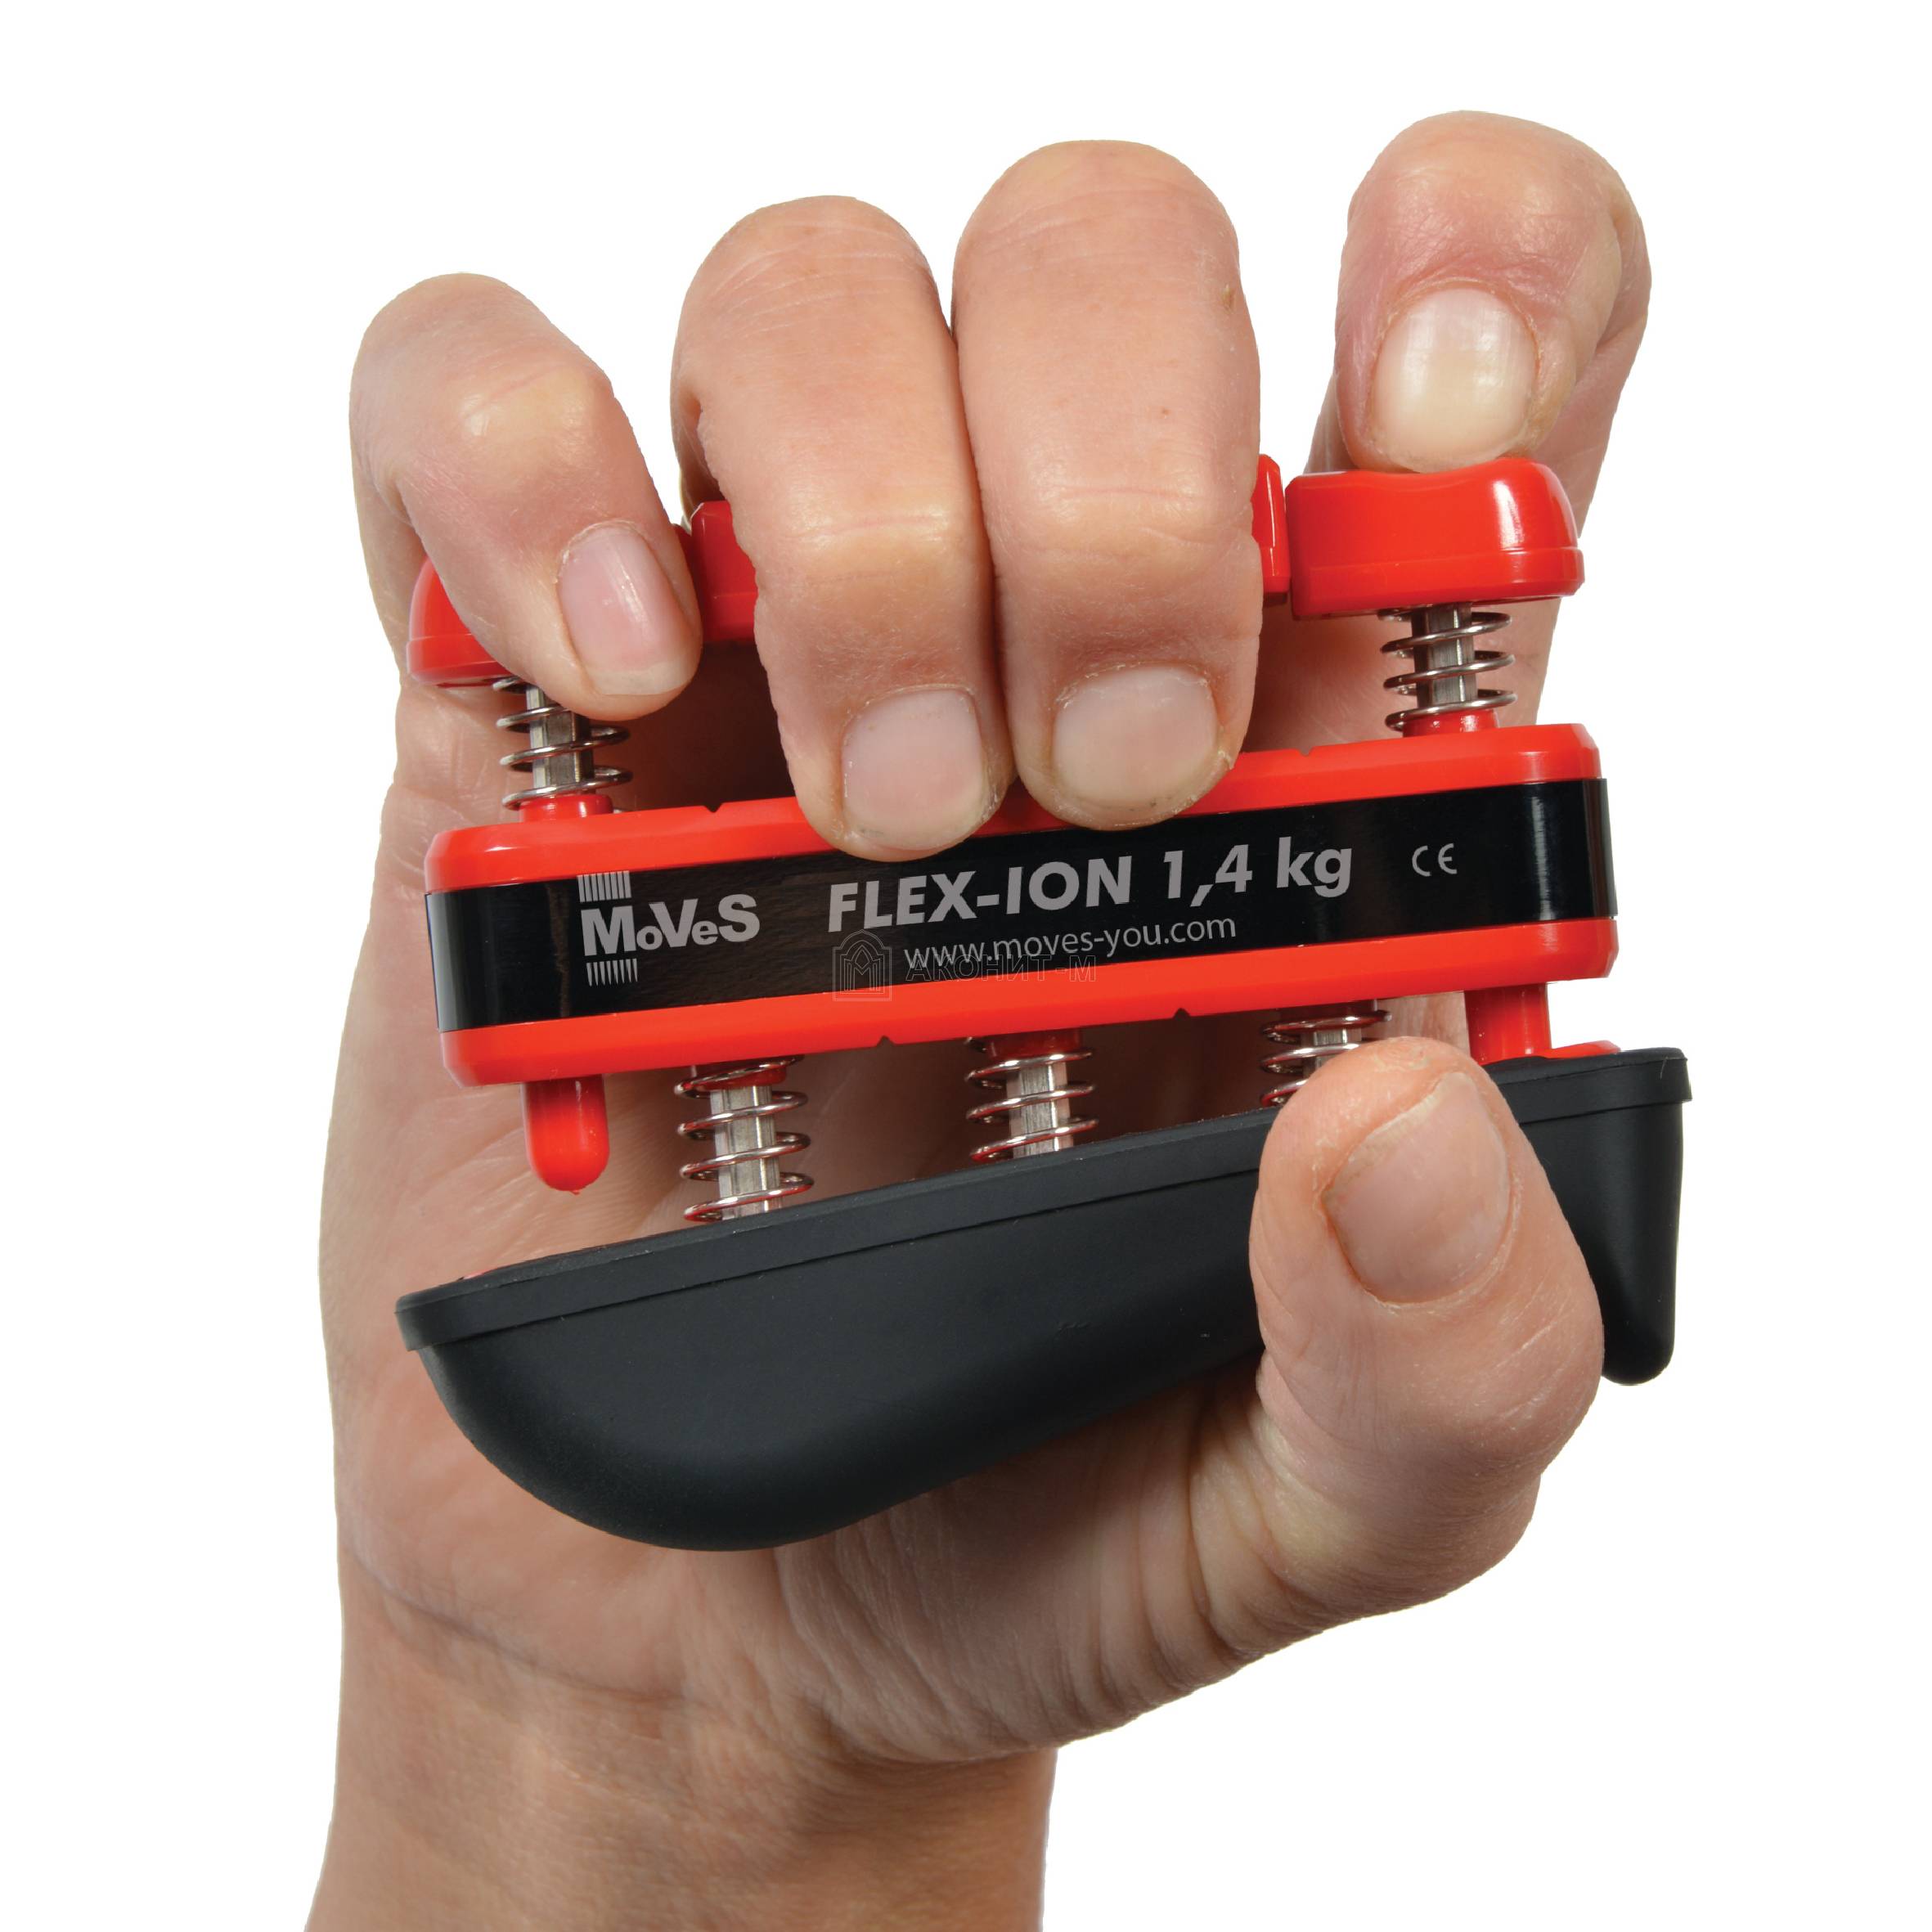 Эспандер для каждого пальца MoVeS - средняя нагрузка - 1,4 кг на палец